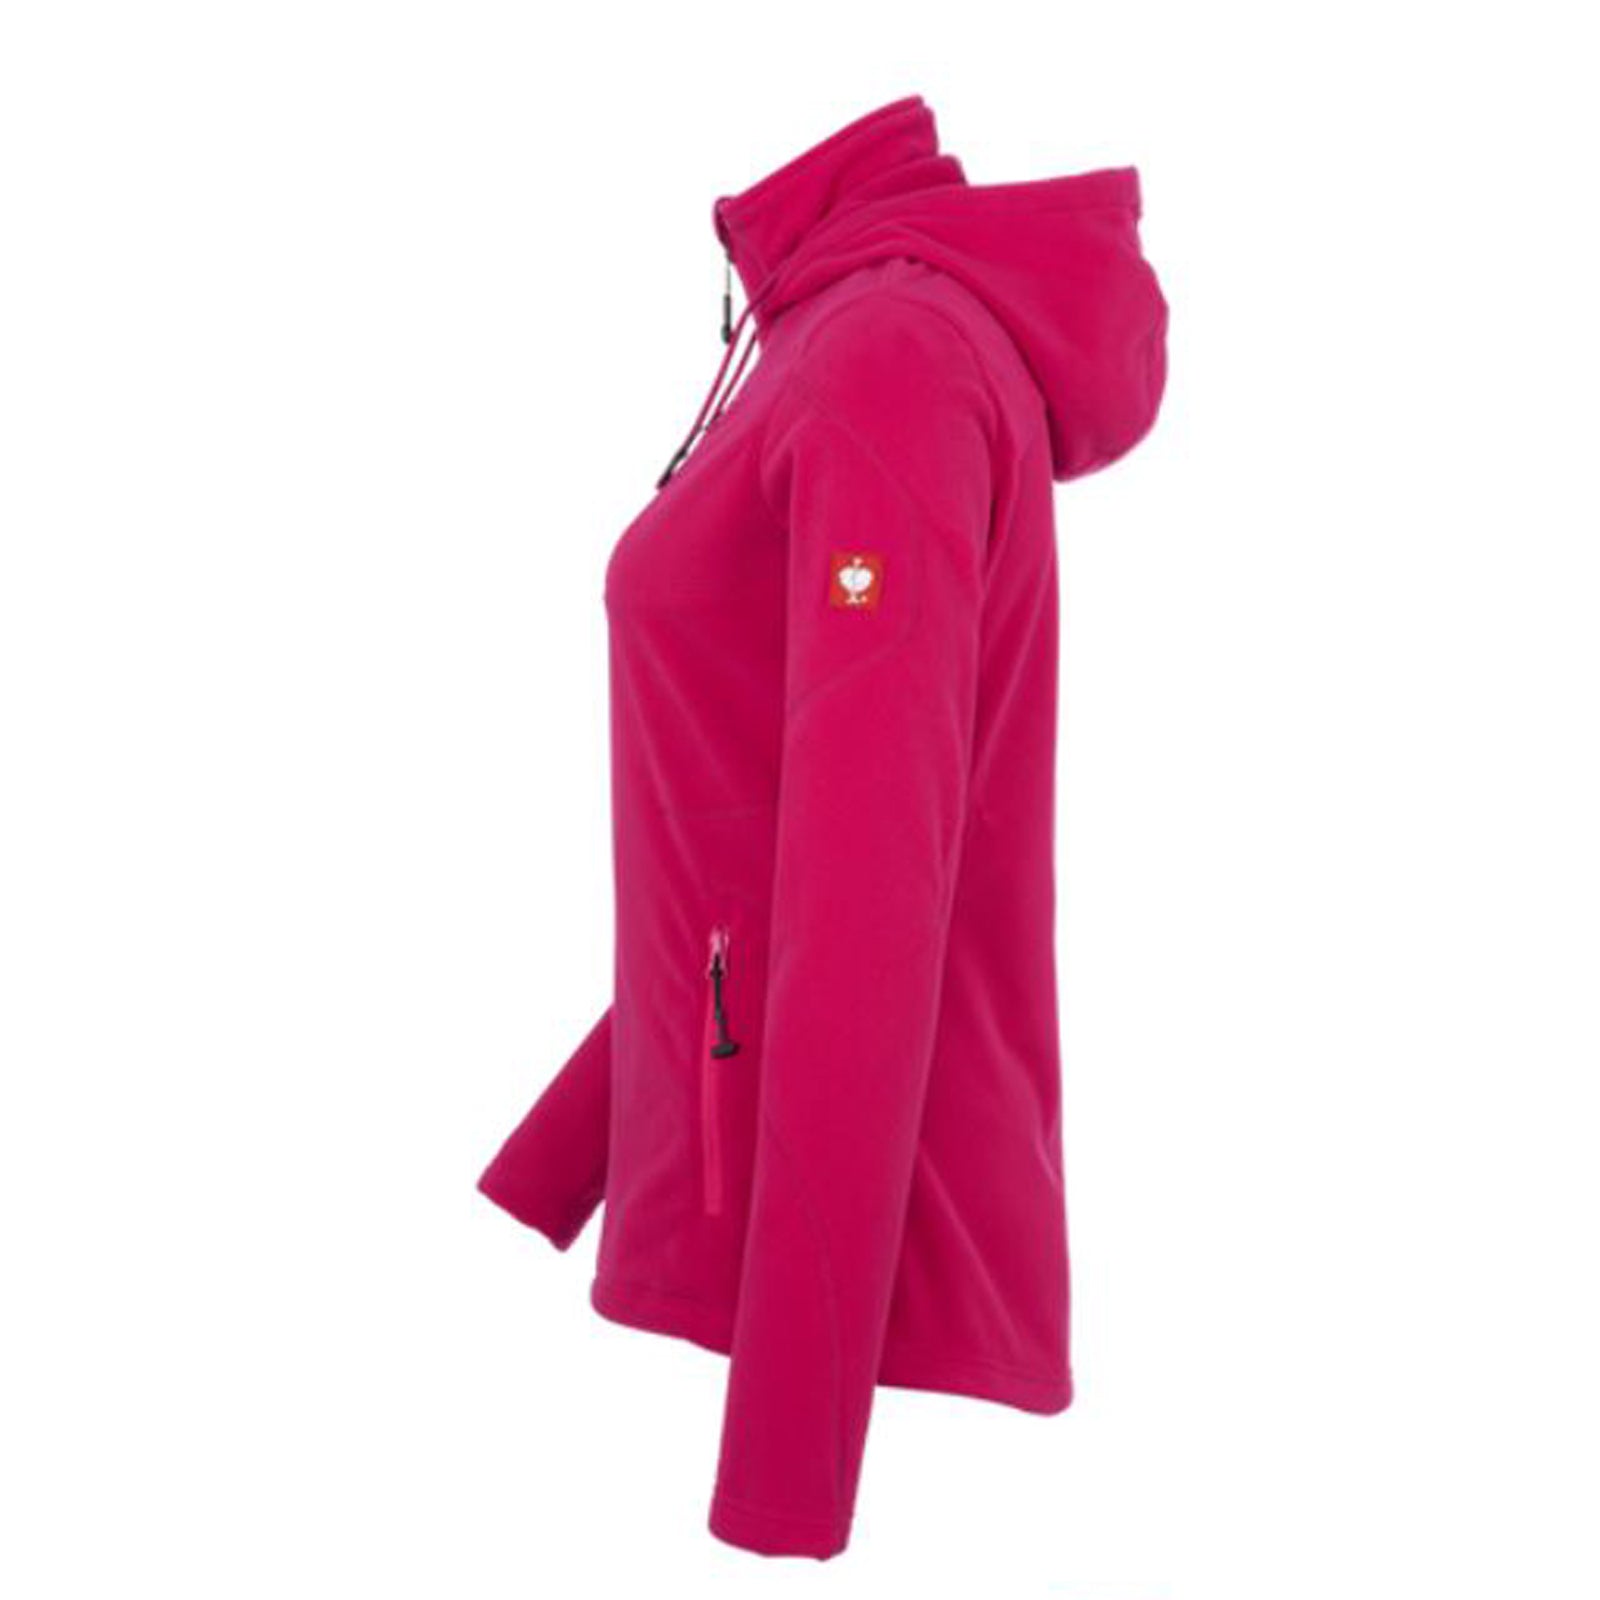 engelbert strauss Hooded fleece jacket e.s. motion 2020 German Workwear